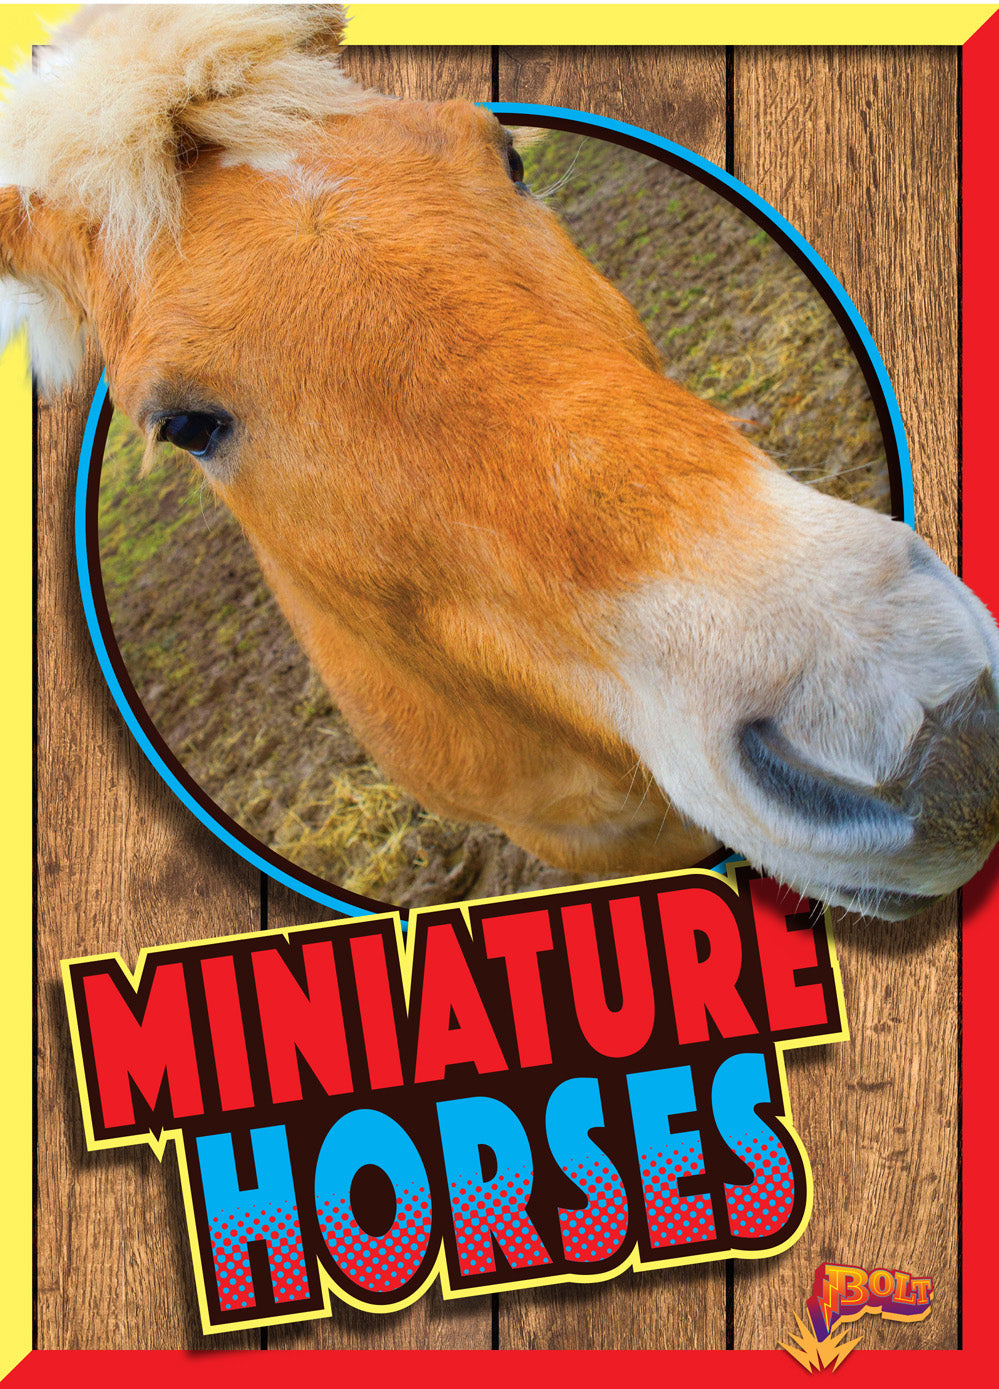 Horse Crazy: Miniature Horses